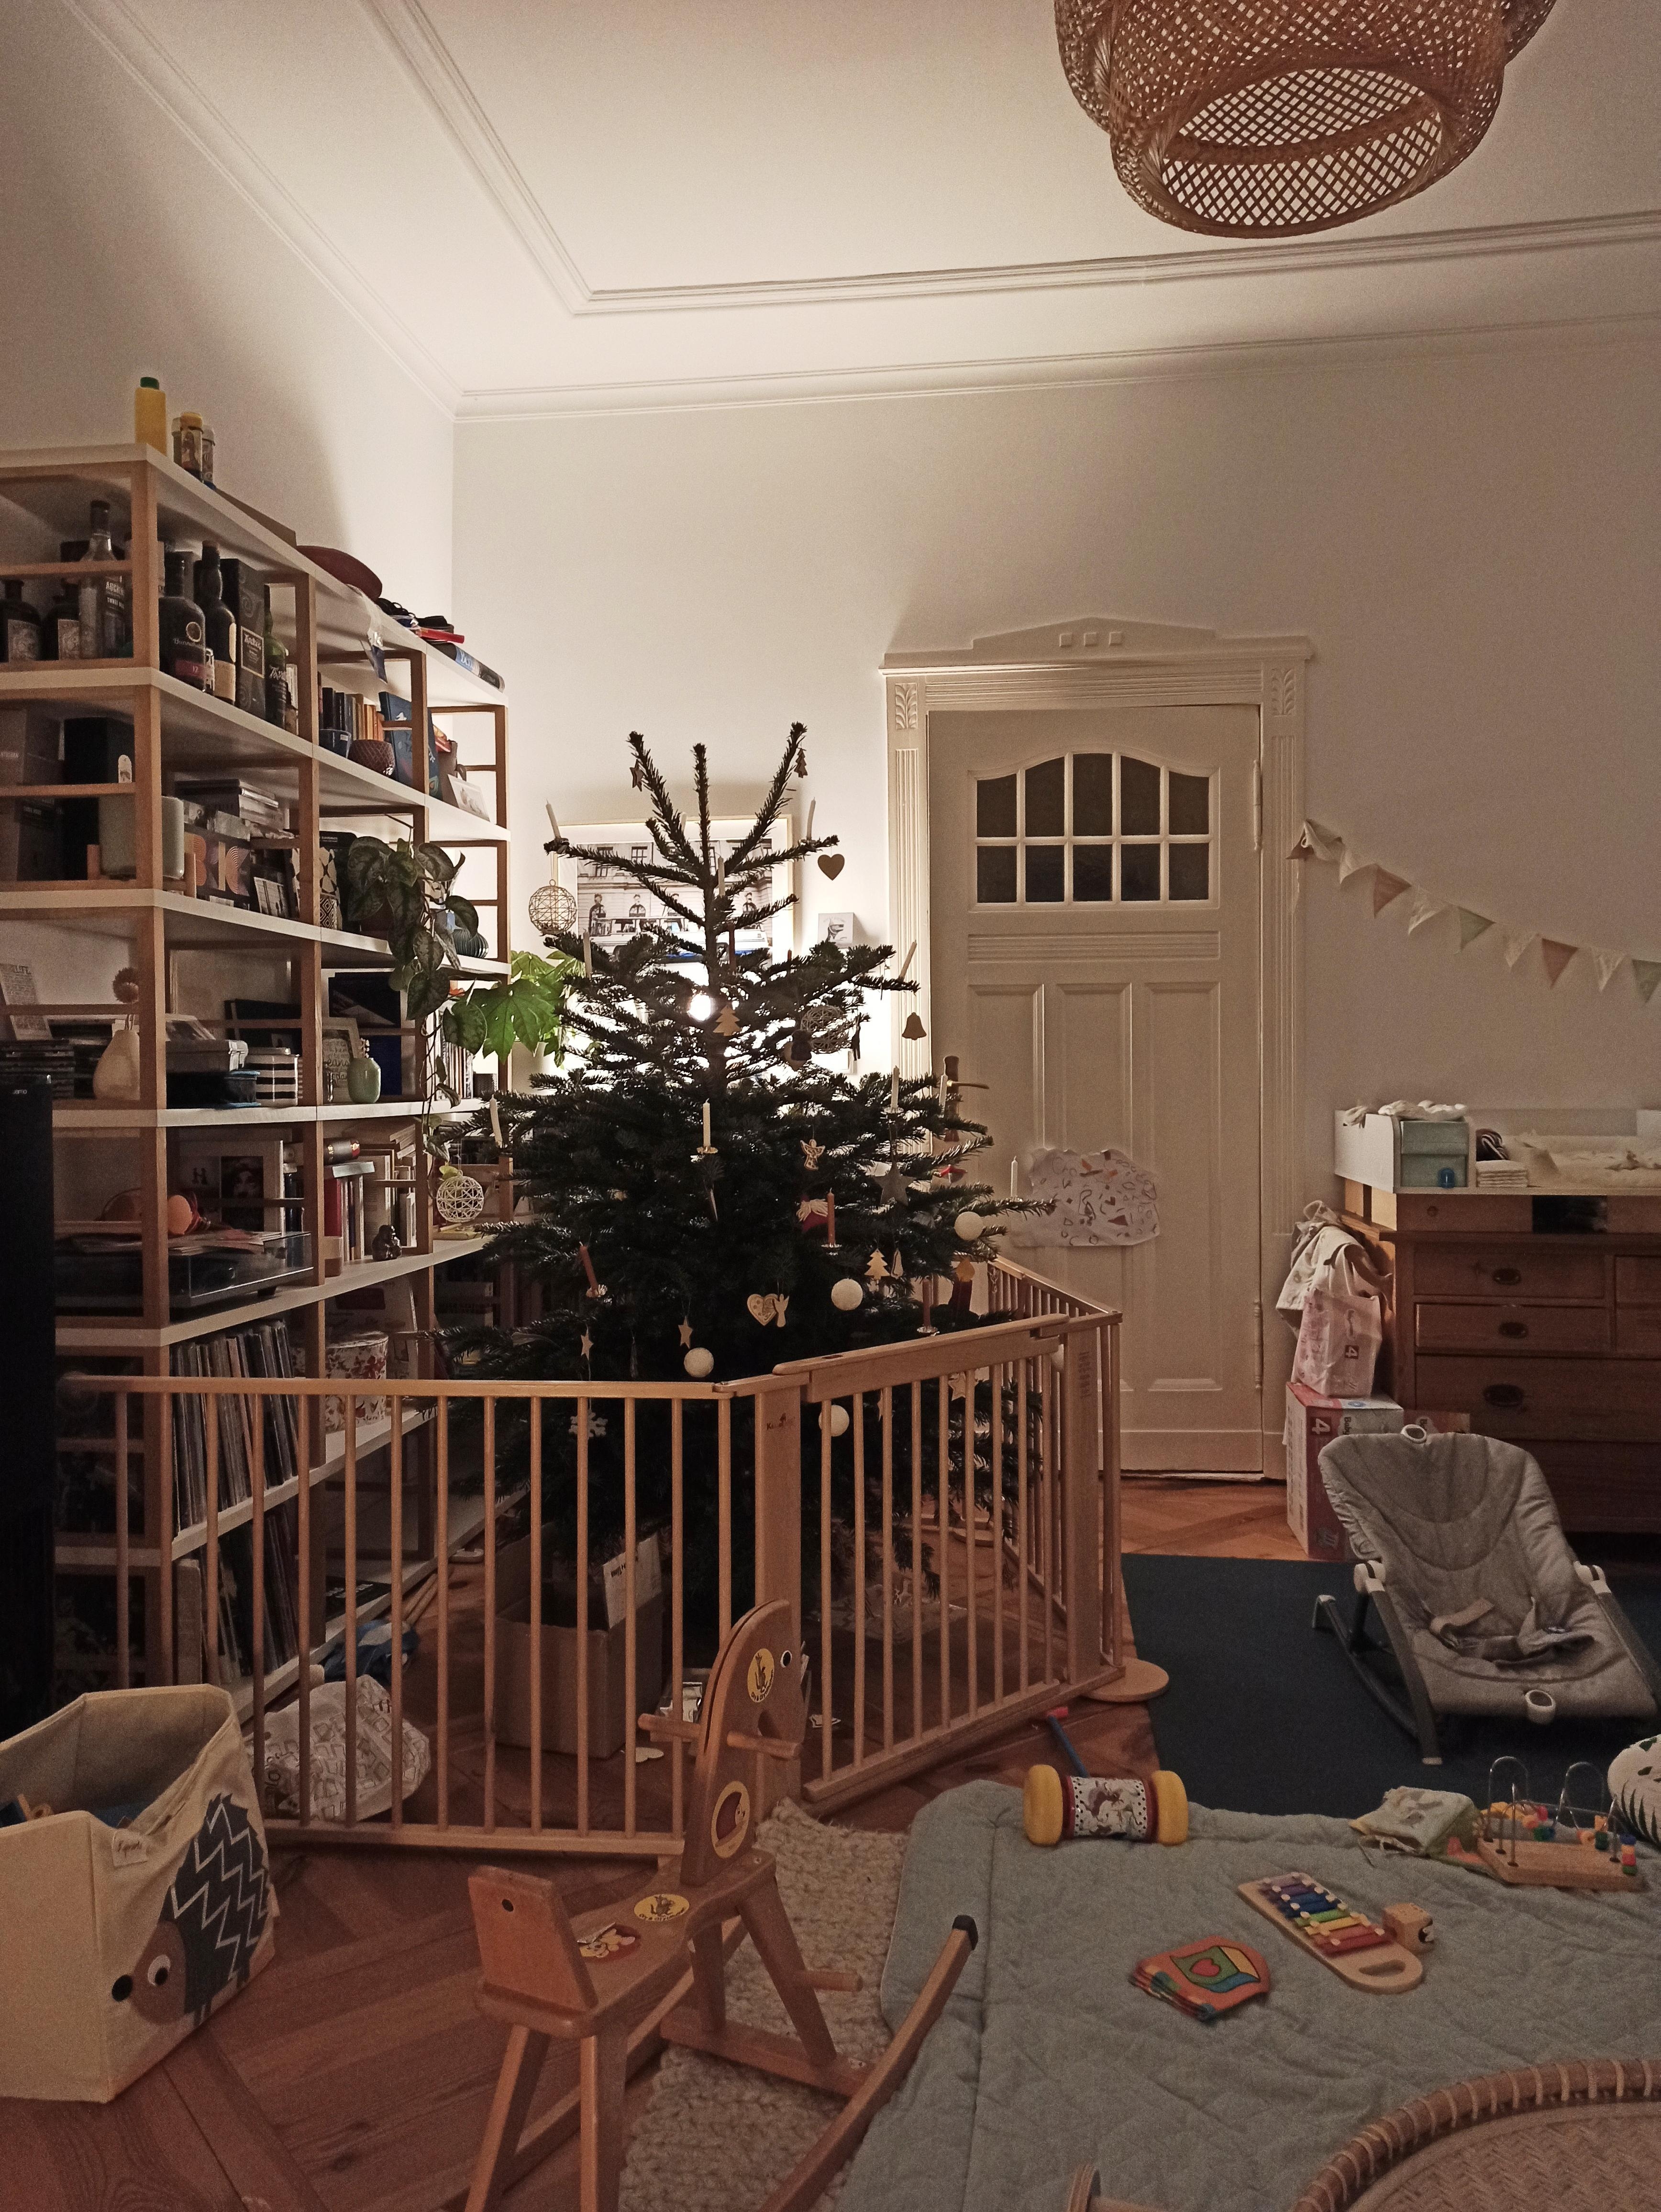 Baby- bzw. Baumschutz 😊 Fast dekorativ. Ach nee, doch nicht. #Weihnachtsbaum